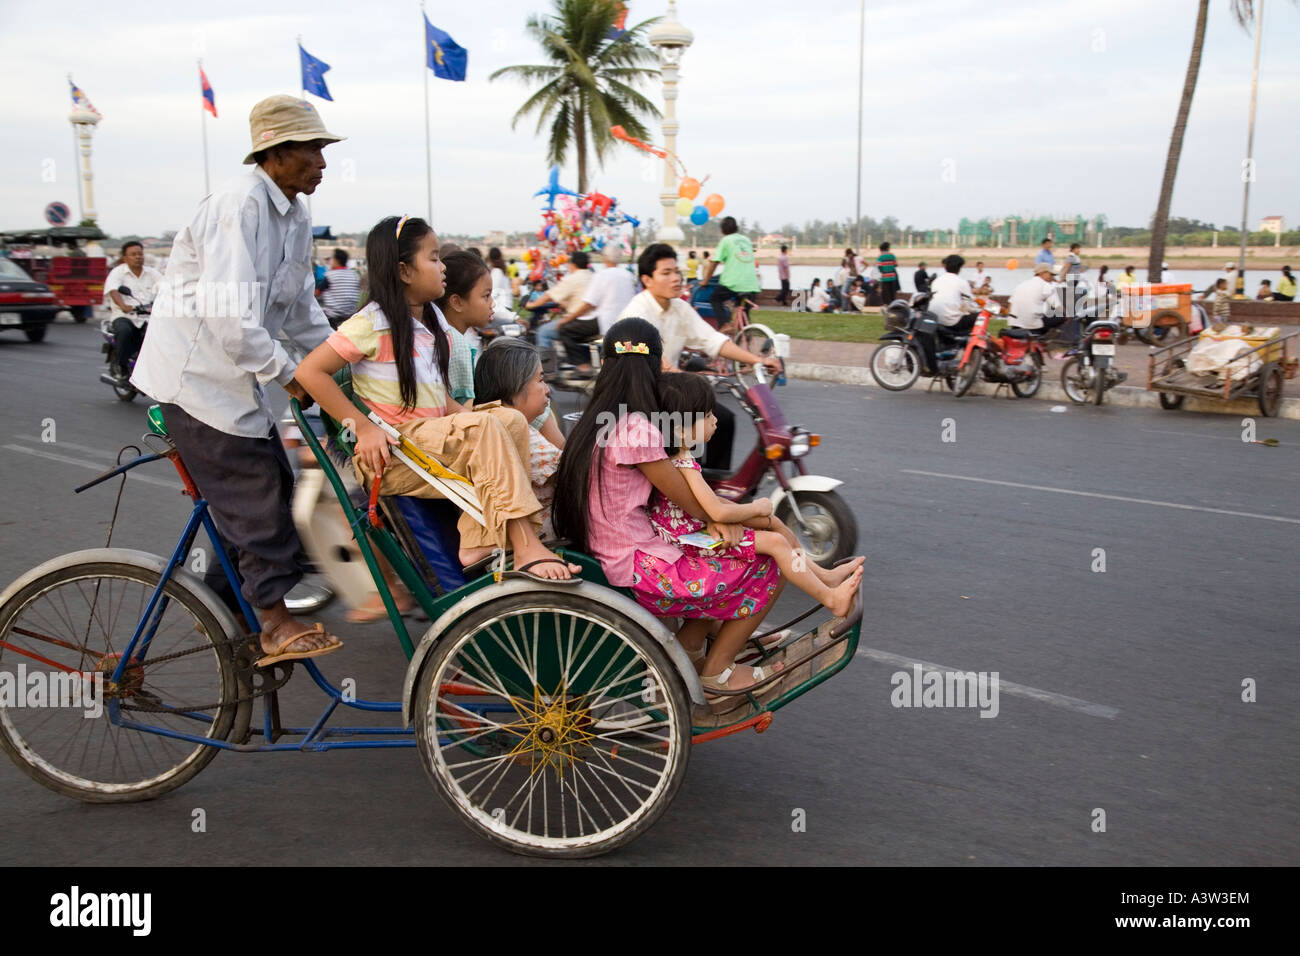 Family on Cyclo, Phnom Penh, Cambodia Stock Photo